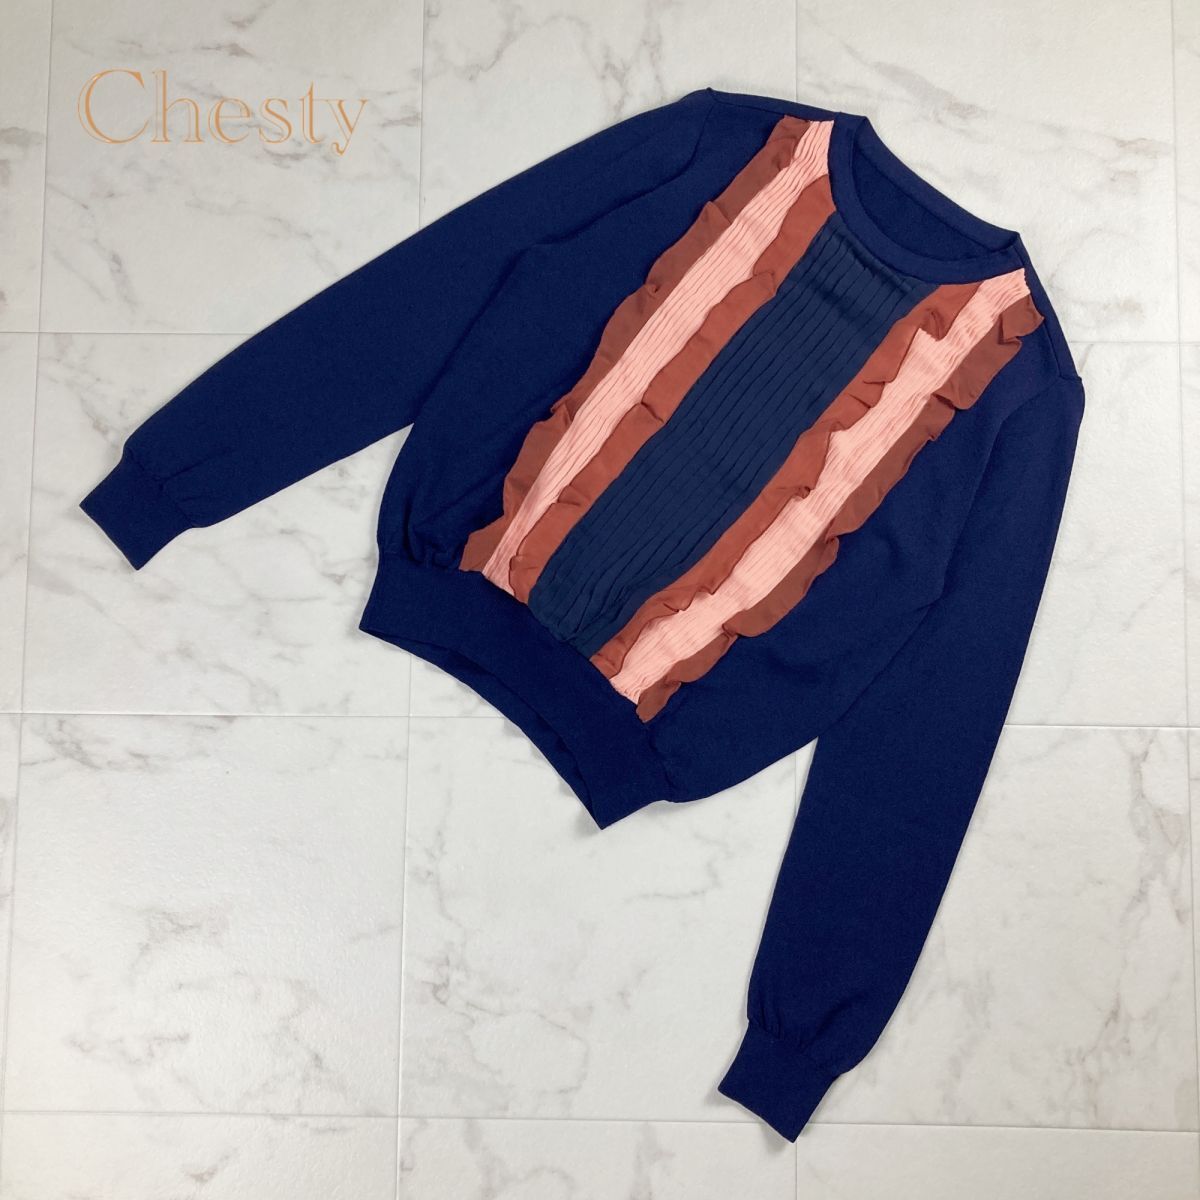  прекрасный товар Chesty Chesty дизайн плиссировать оборка трикотажный джемпер с длинным рукавом tops женский темно-синий темно-синий размер F*NC355